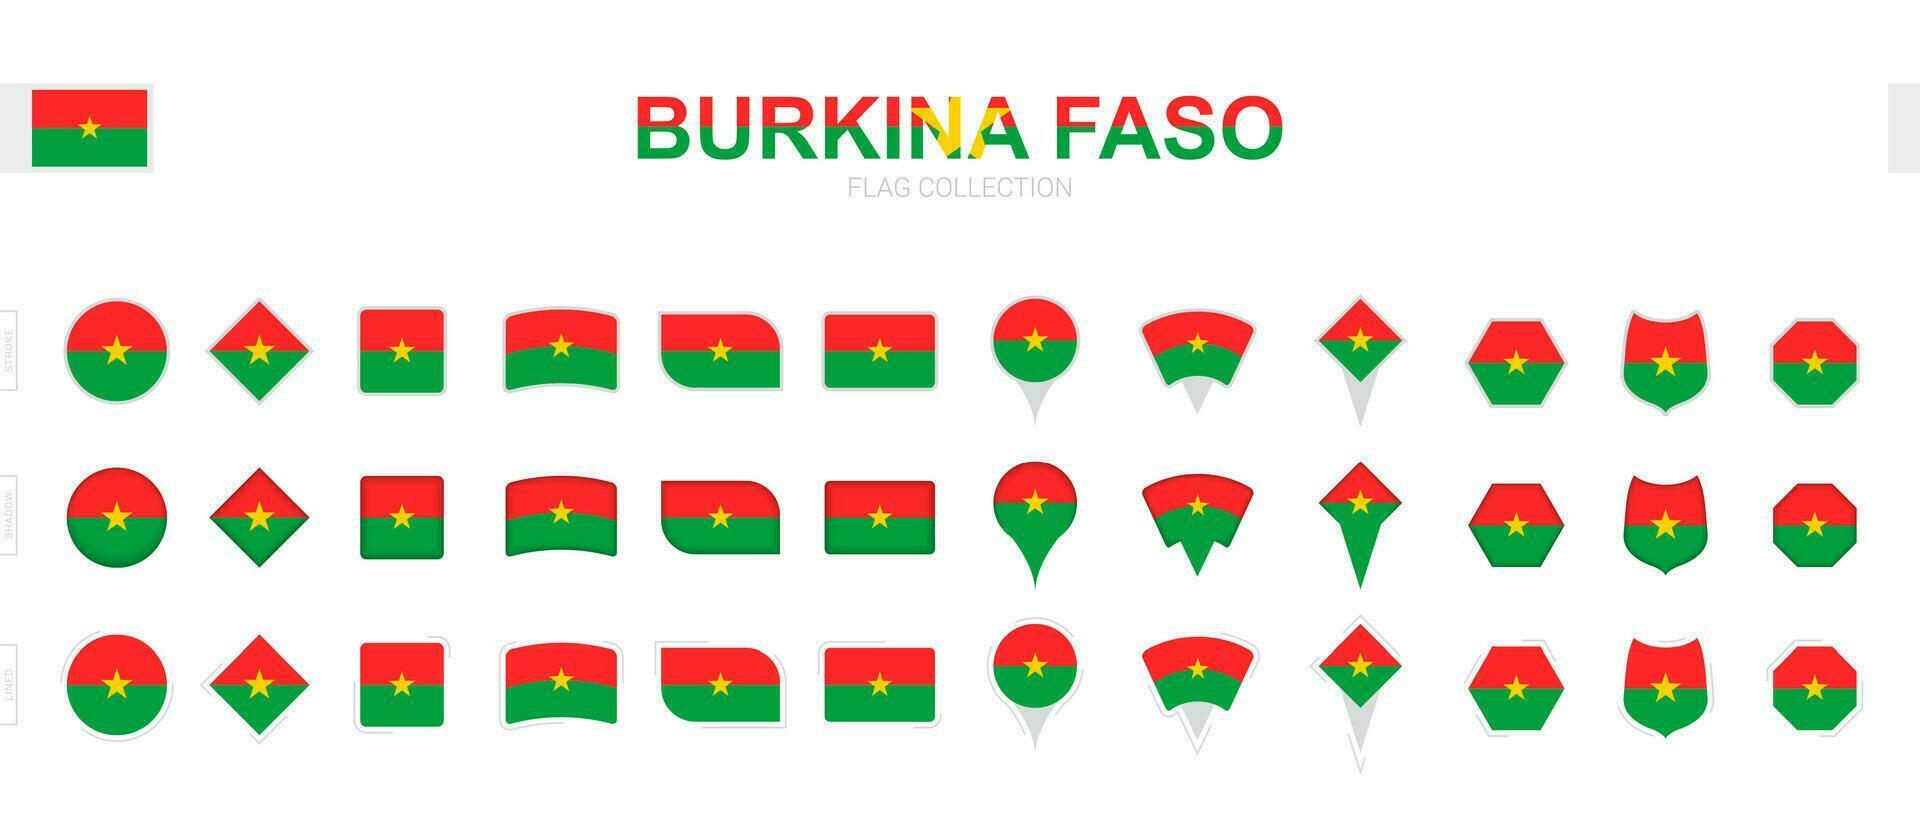 grand collection de burkina faso drapeaux de divers formes et effets. vecteur